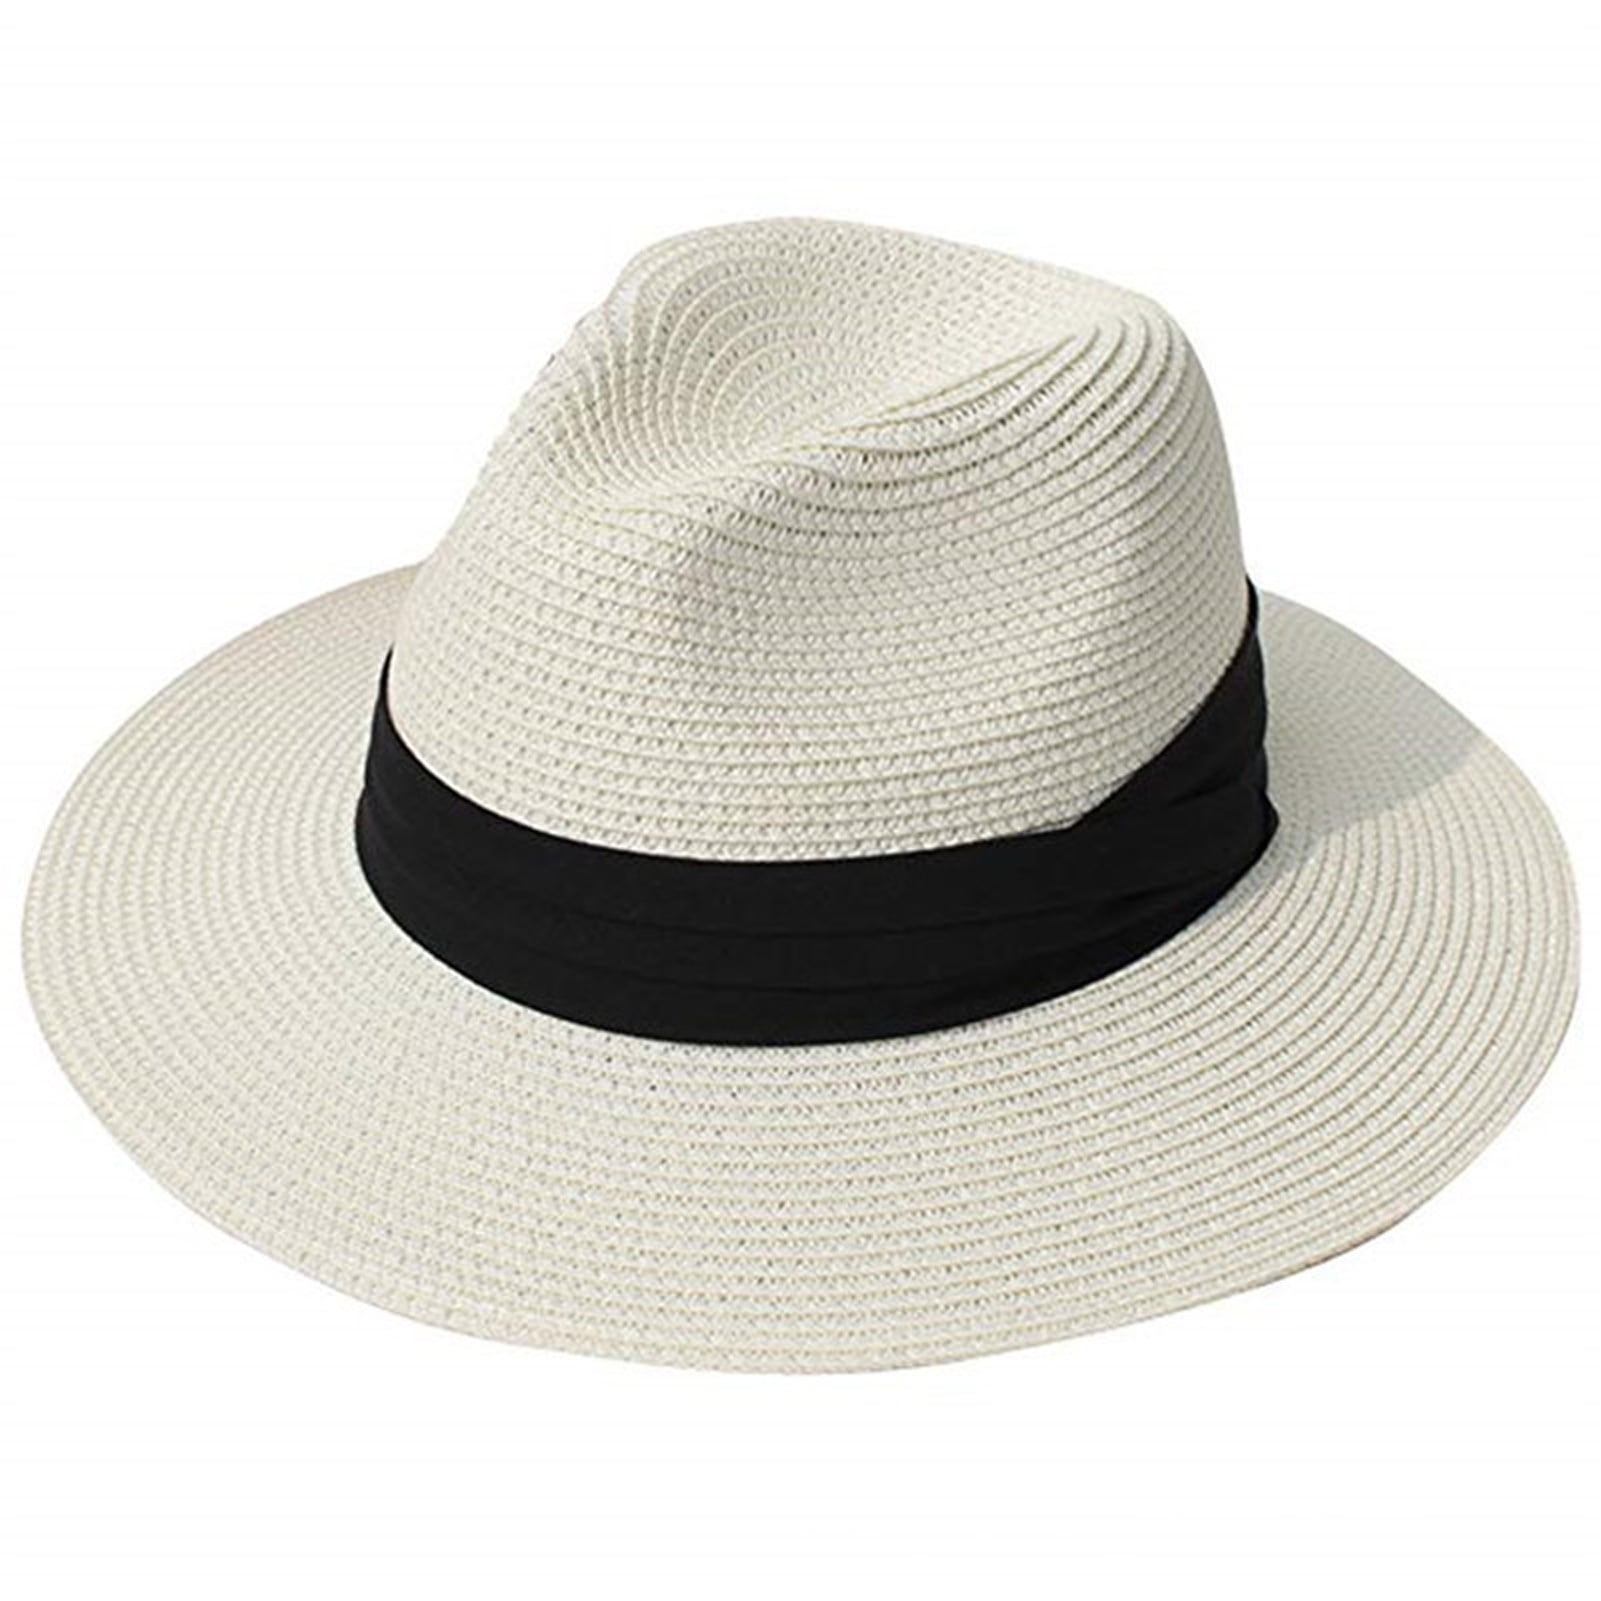 UDIYO Women Wide Brim Straw Panama Roll up Hat Fedora Beach